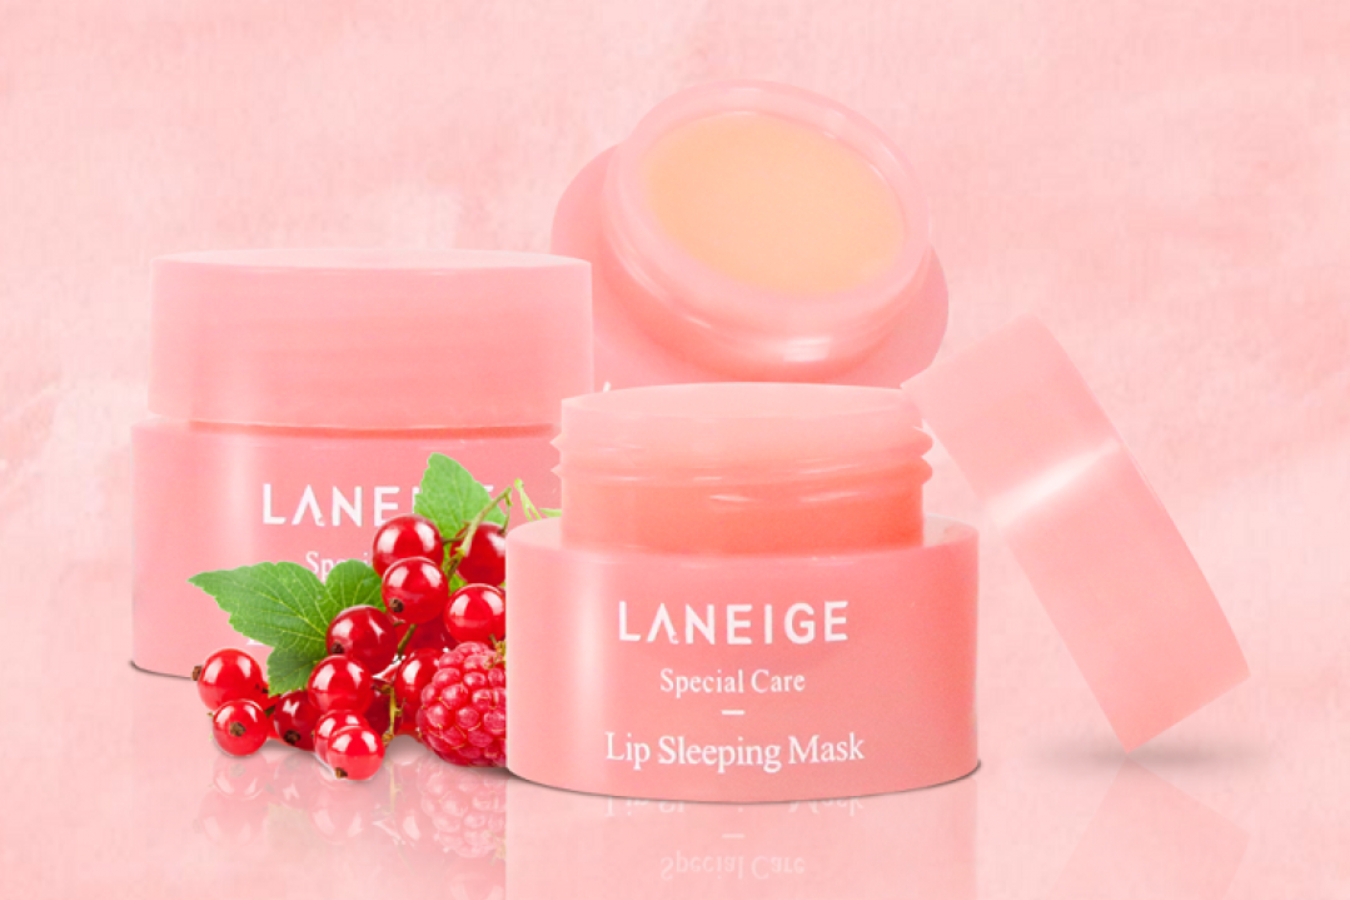 Laneige nổi tiếng với những sản phẩm chăm sóc da mặt